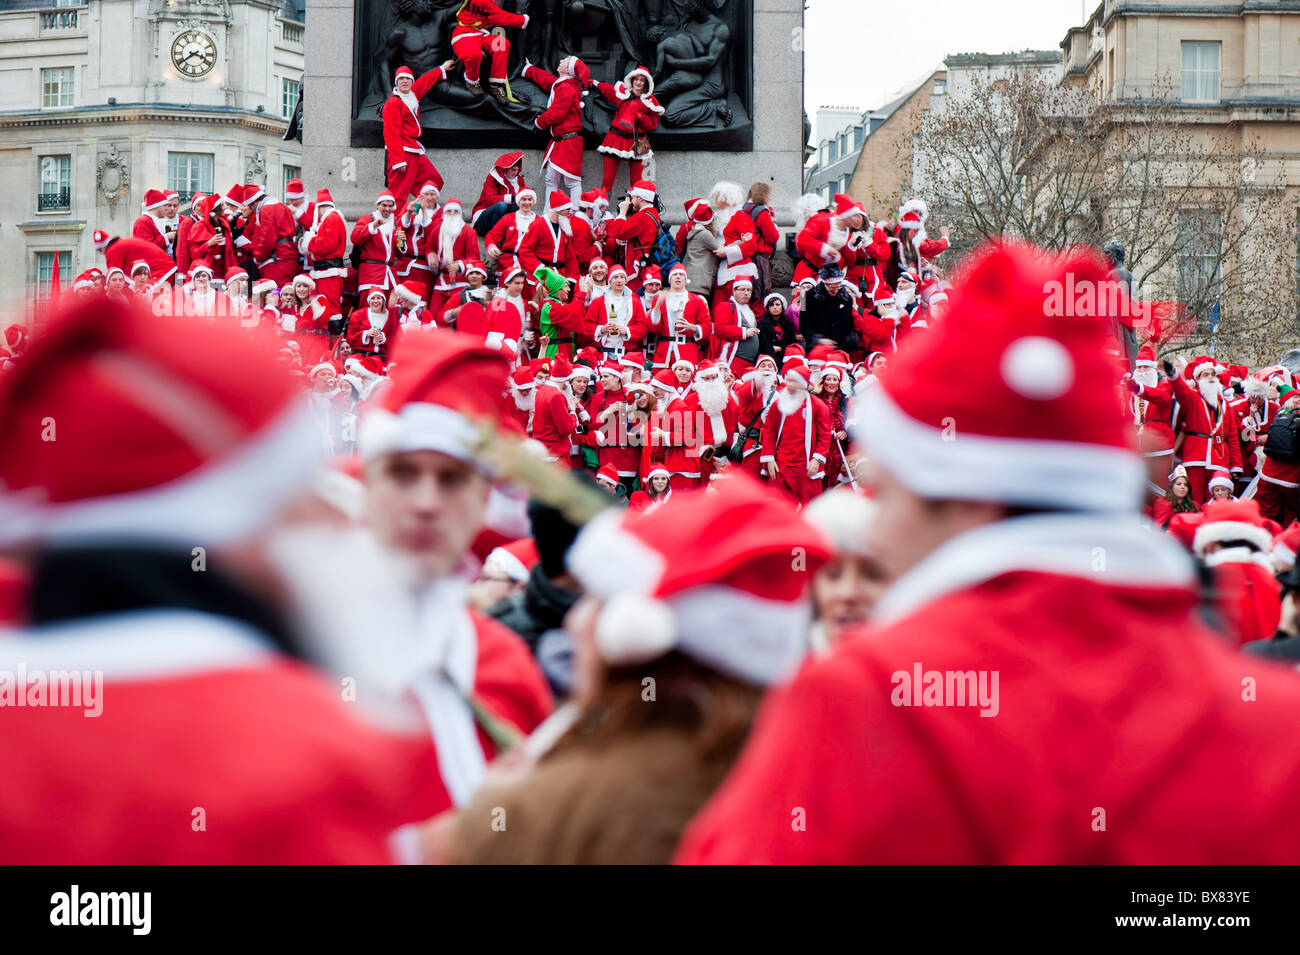 Treffen sich Hunderte der Weihnachtsmänner auf dem Trafalgar Square, organisiert via Twitter und Facebook, Weihnachten 2010, London, Vereinigtes Königreich Stockfoto